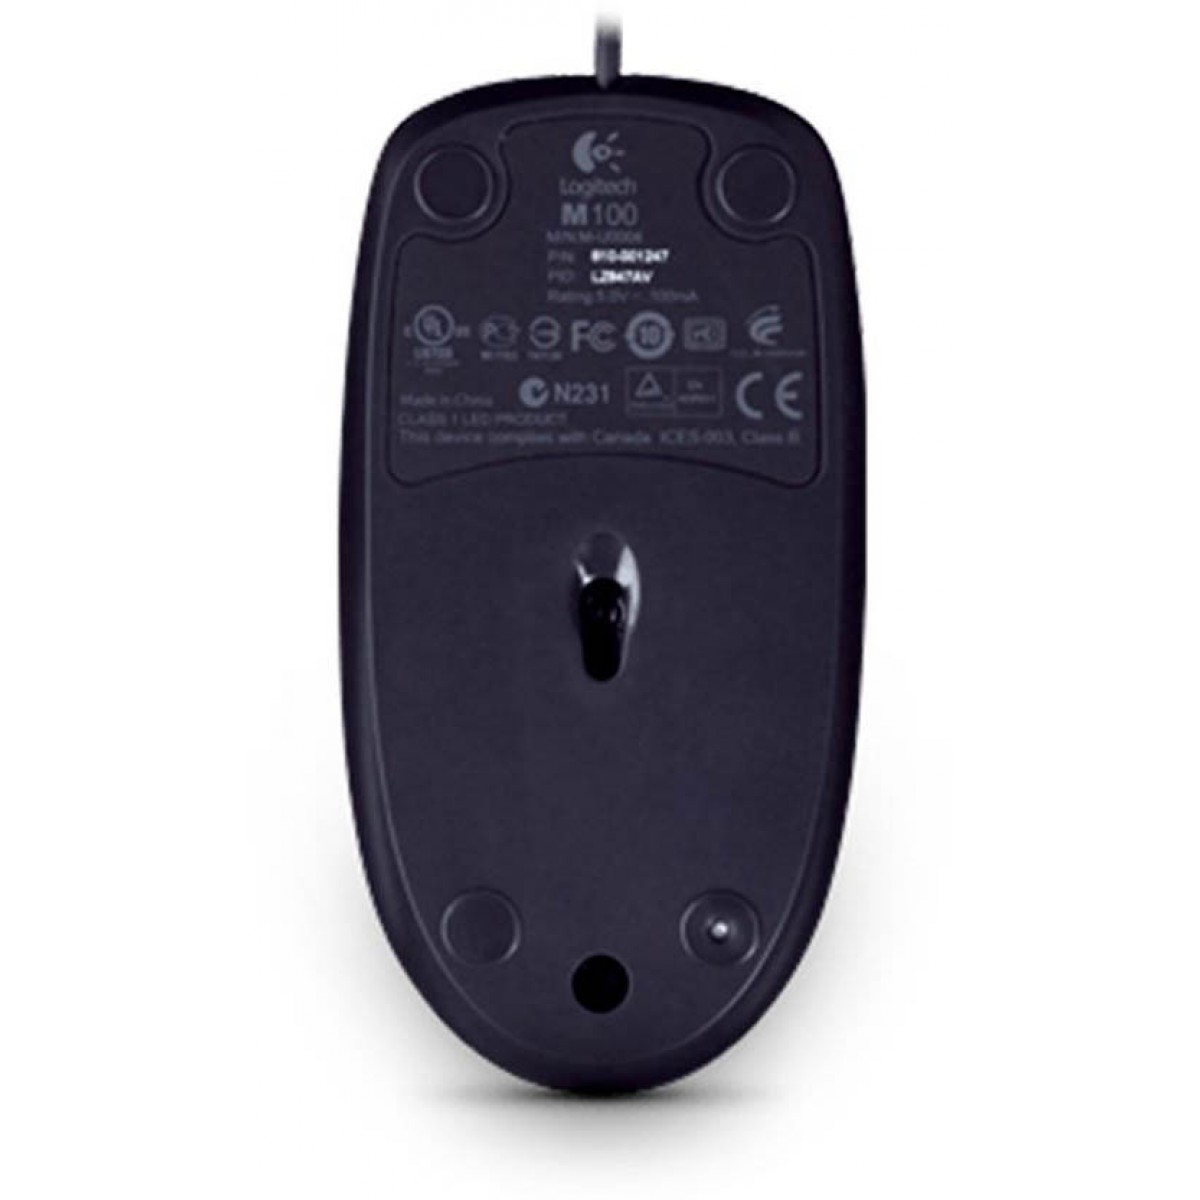 Mouse Logitech M100 1000 DPI, Optico, USB, Black, 910-001601-H